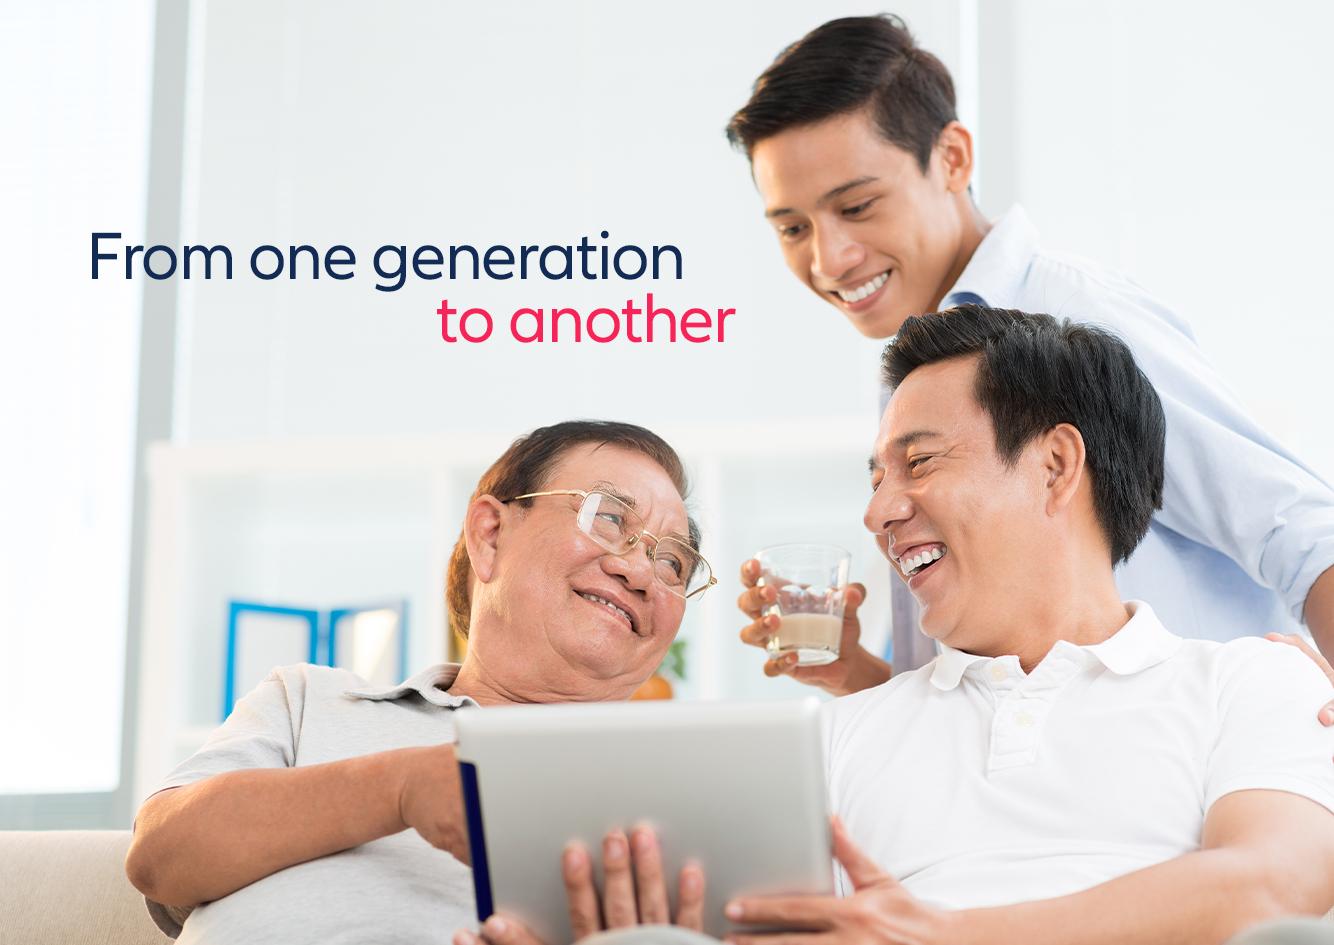 Allianz PNB Life mengamankan warisan dari generasi ke generasi GMA News Online